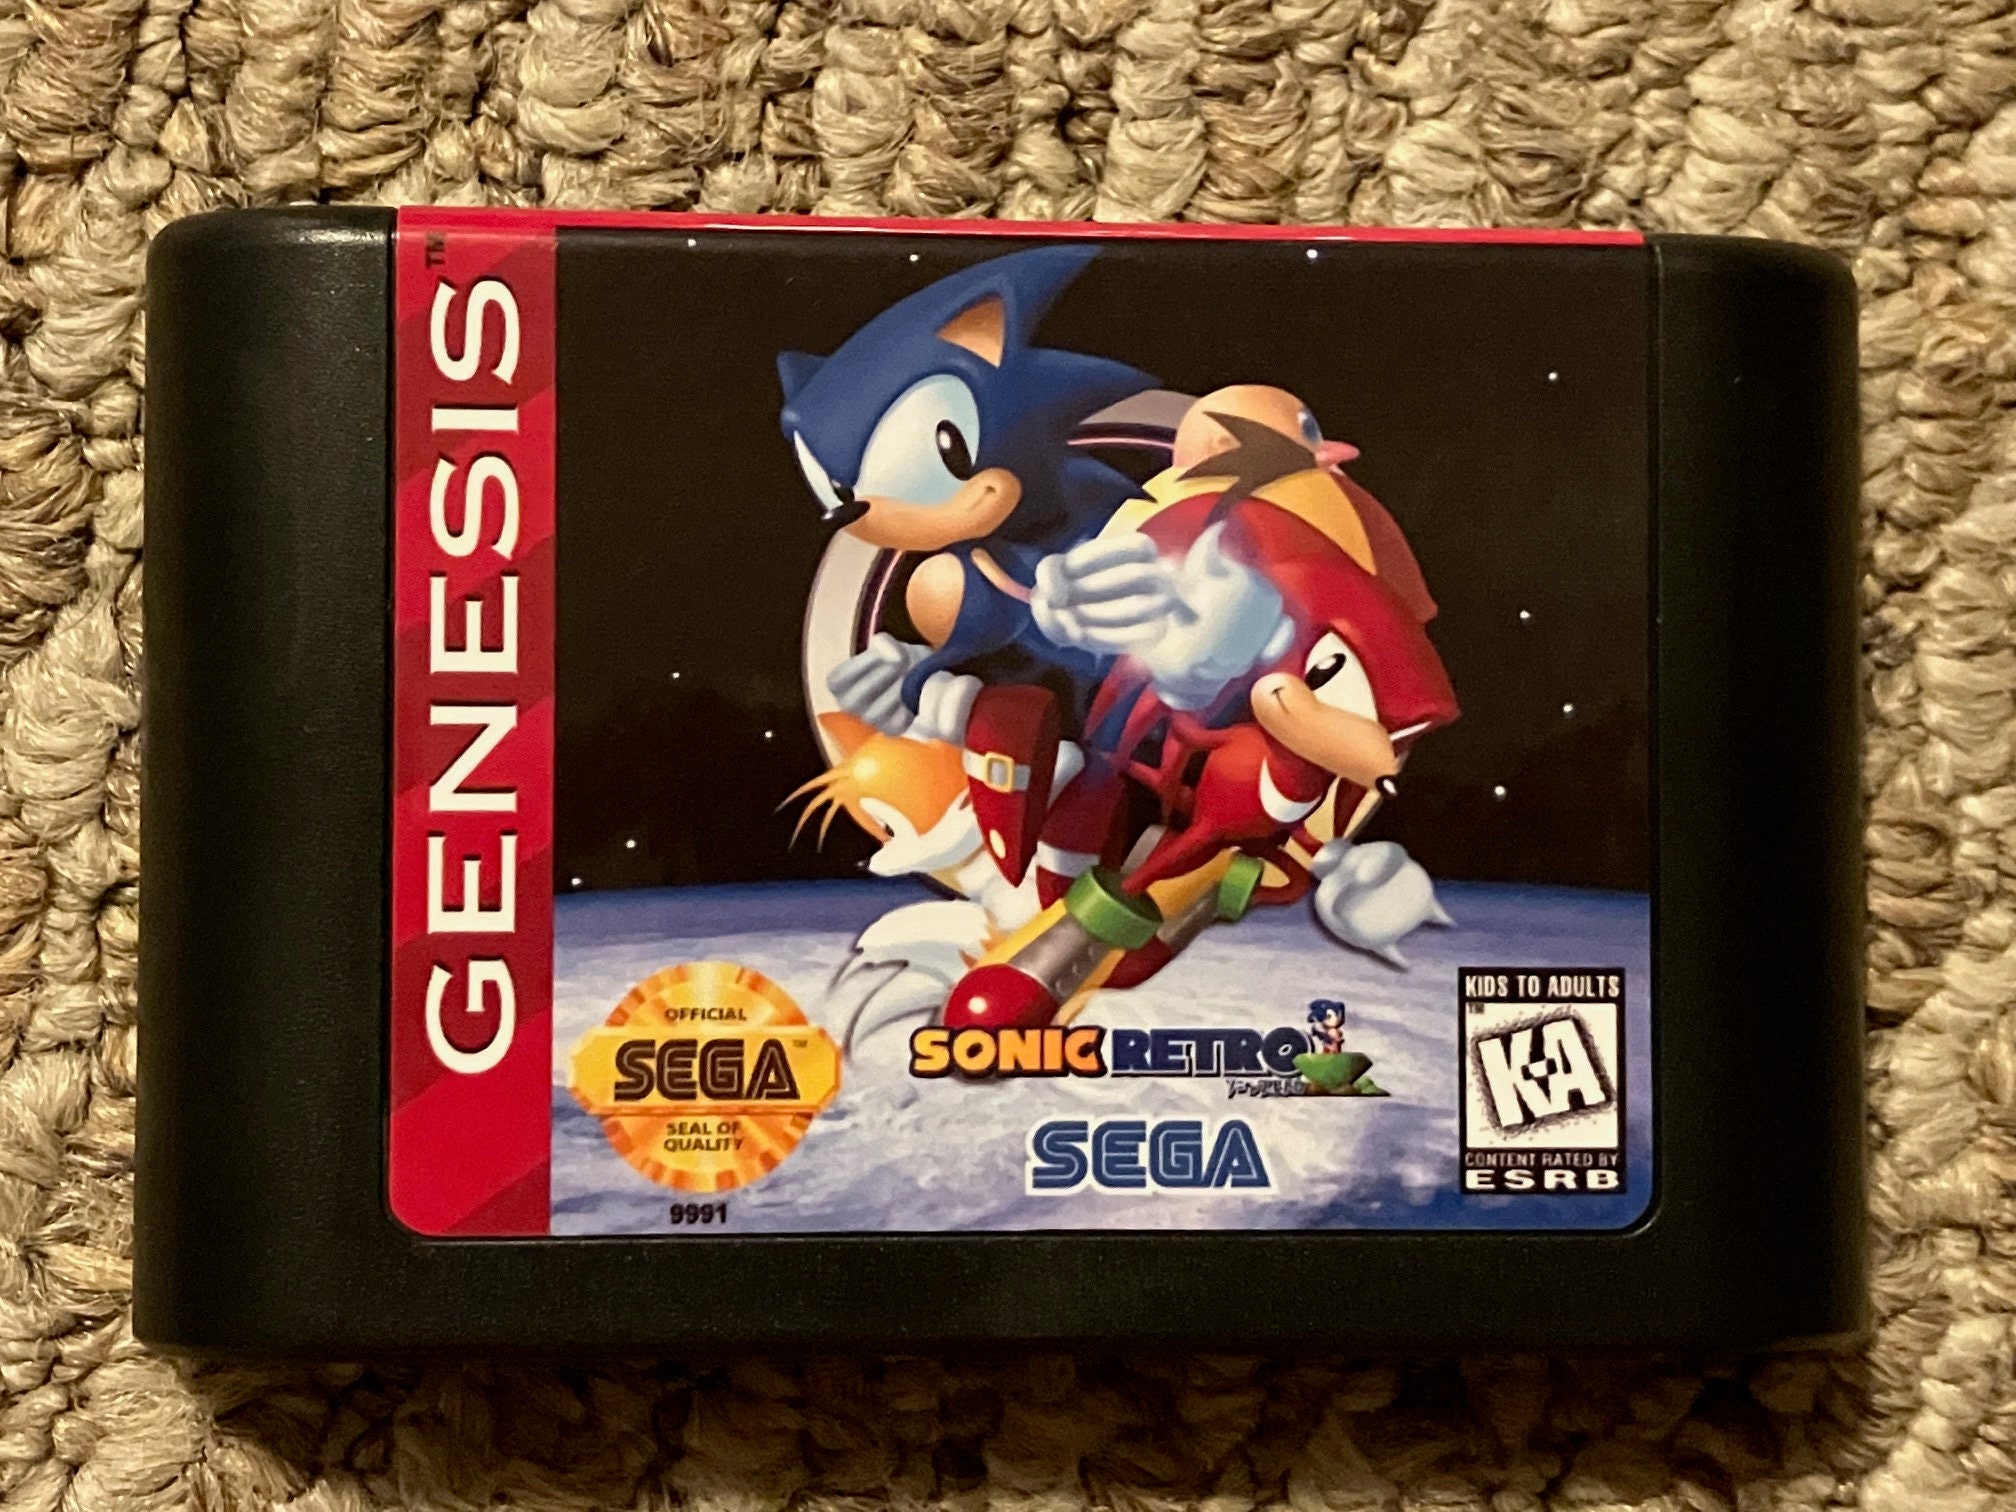 Sonic Classic Heroes Sega Genesis Video Game